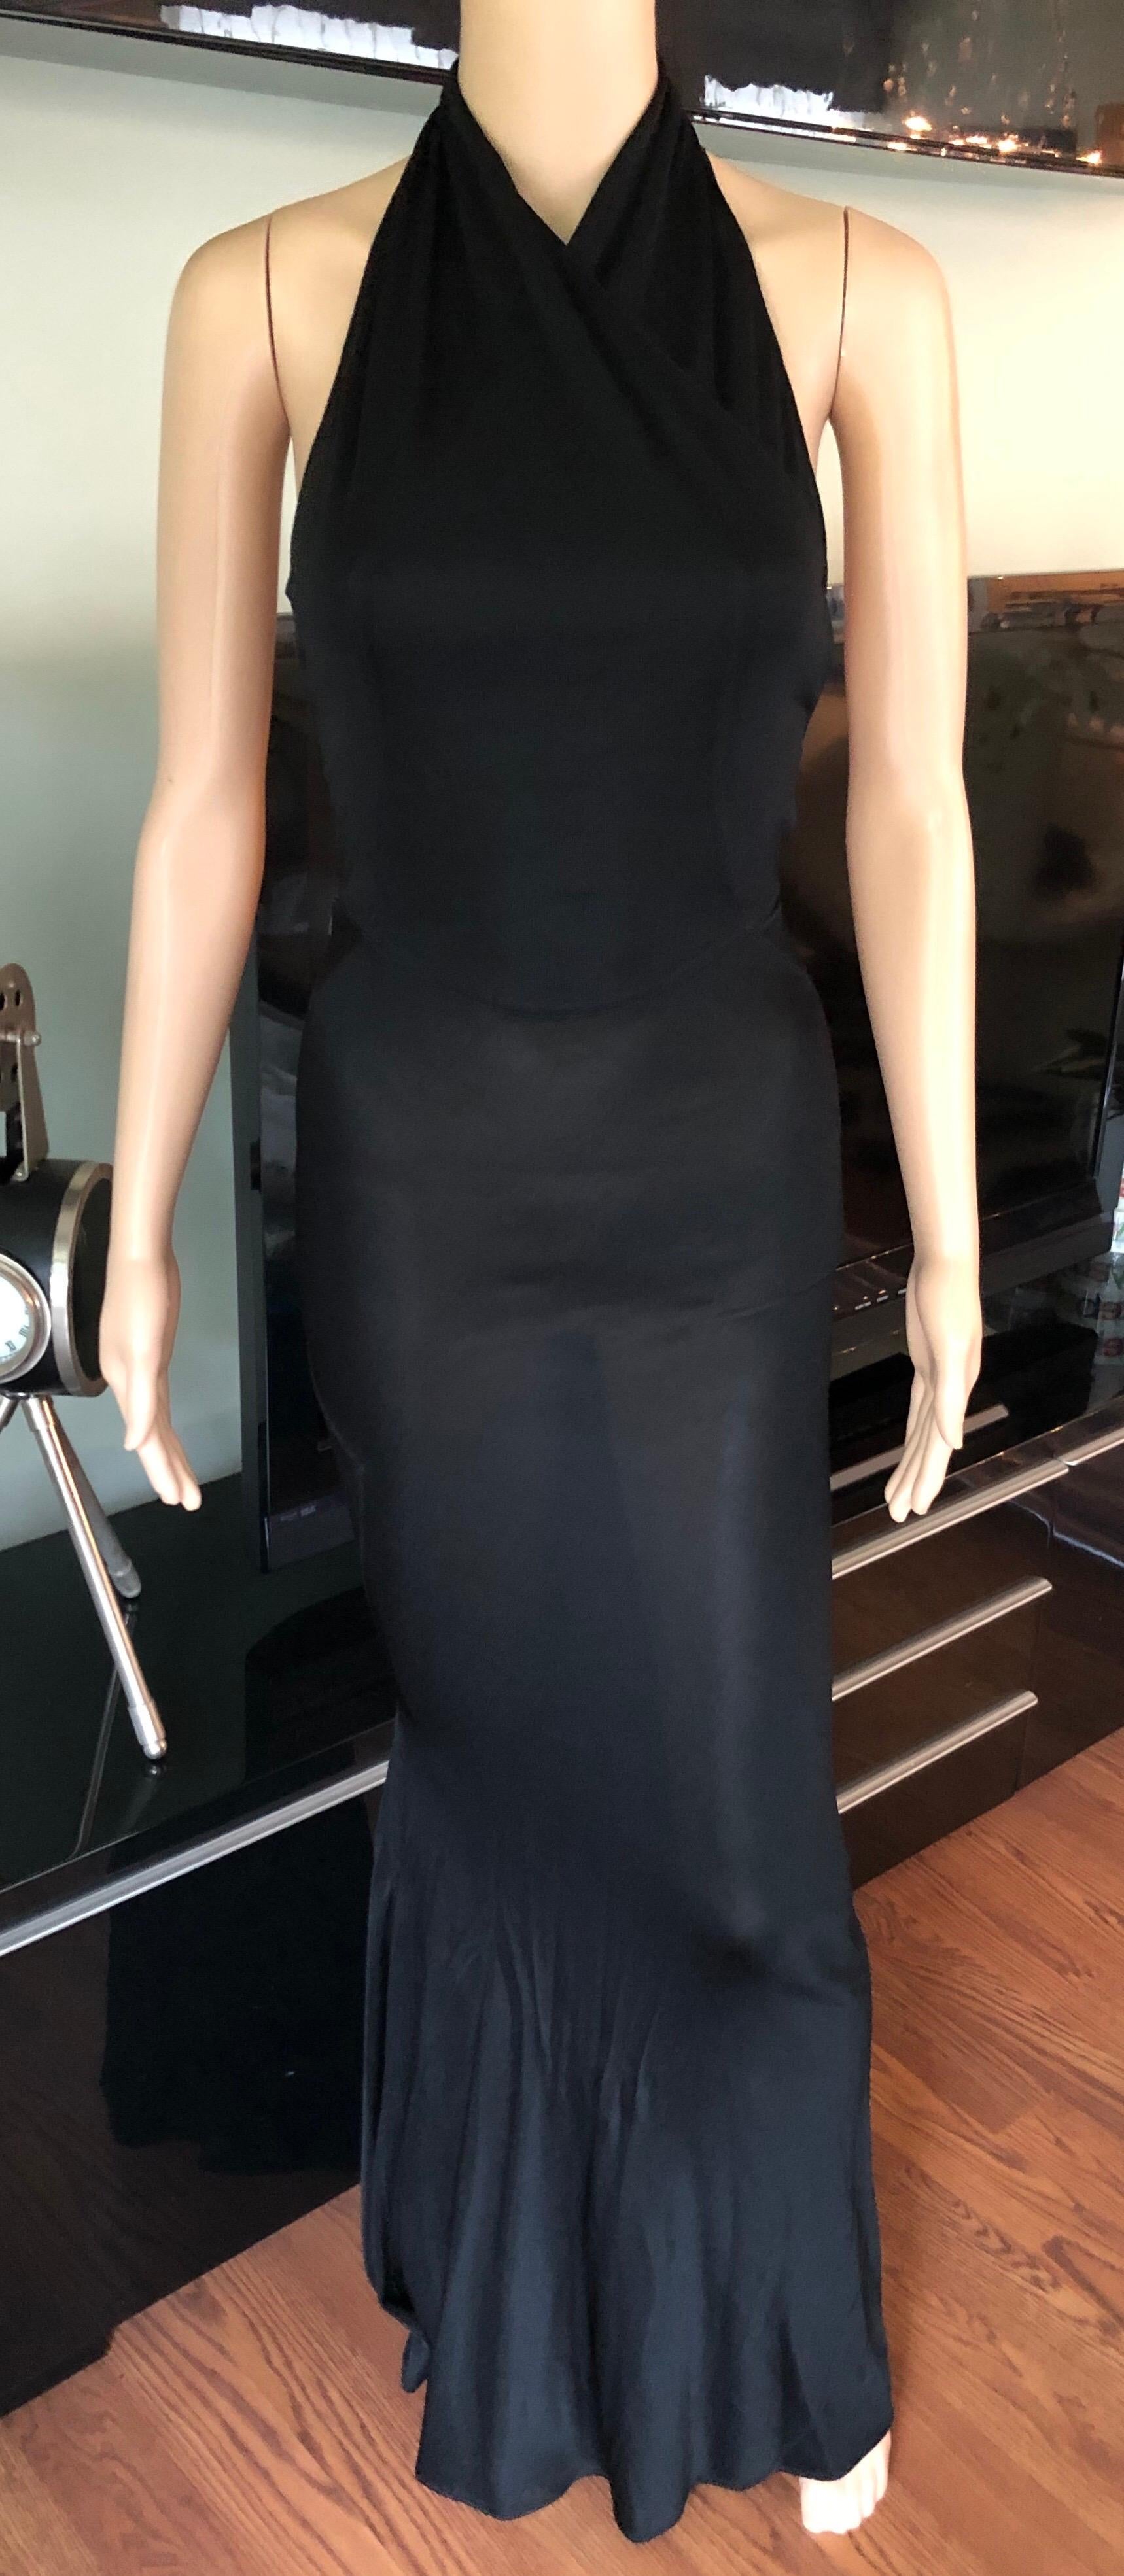 black halter backless dress